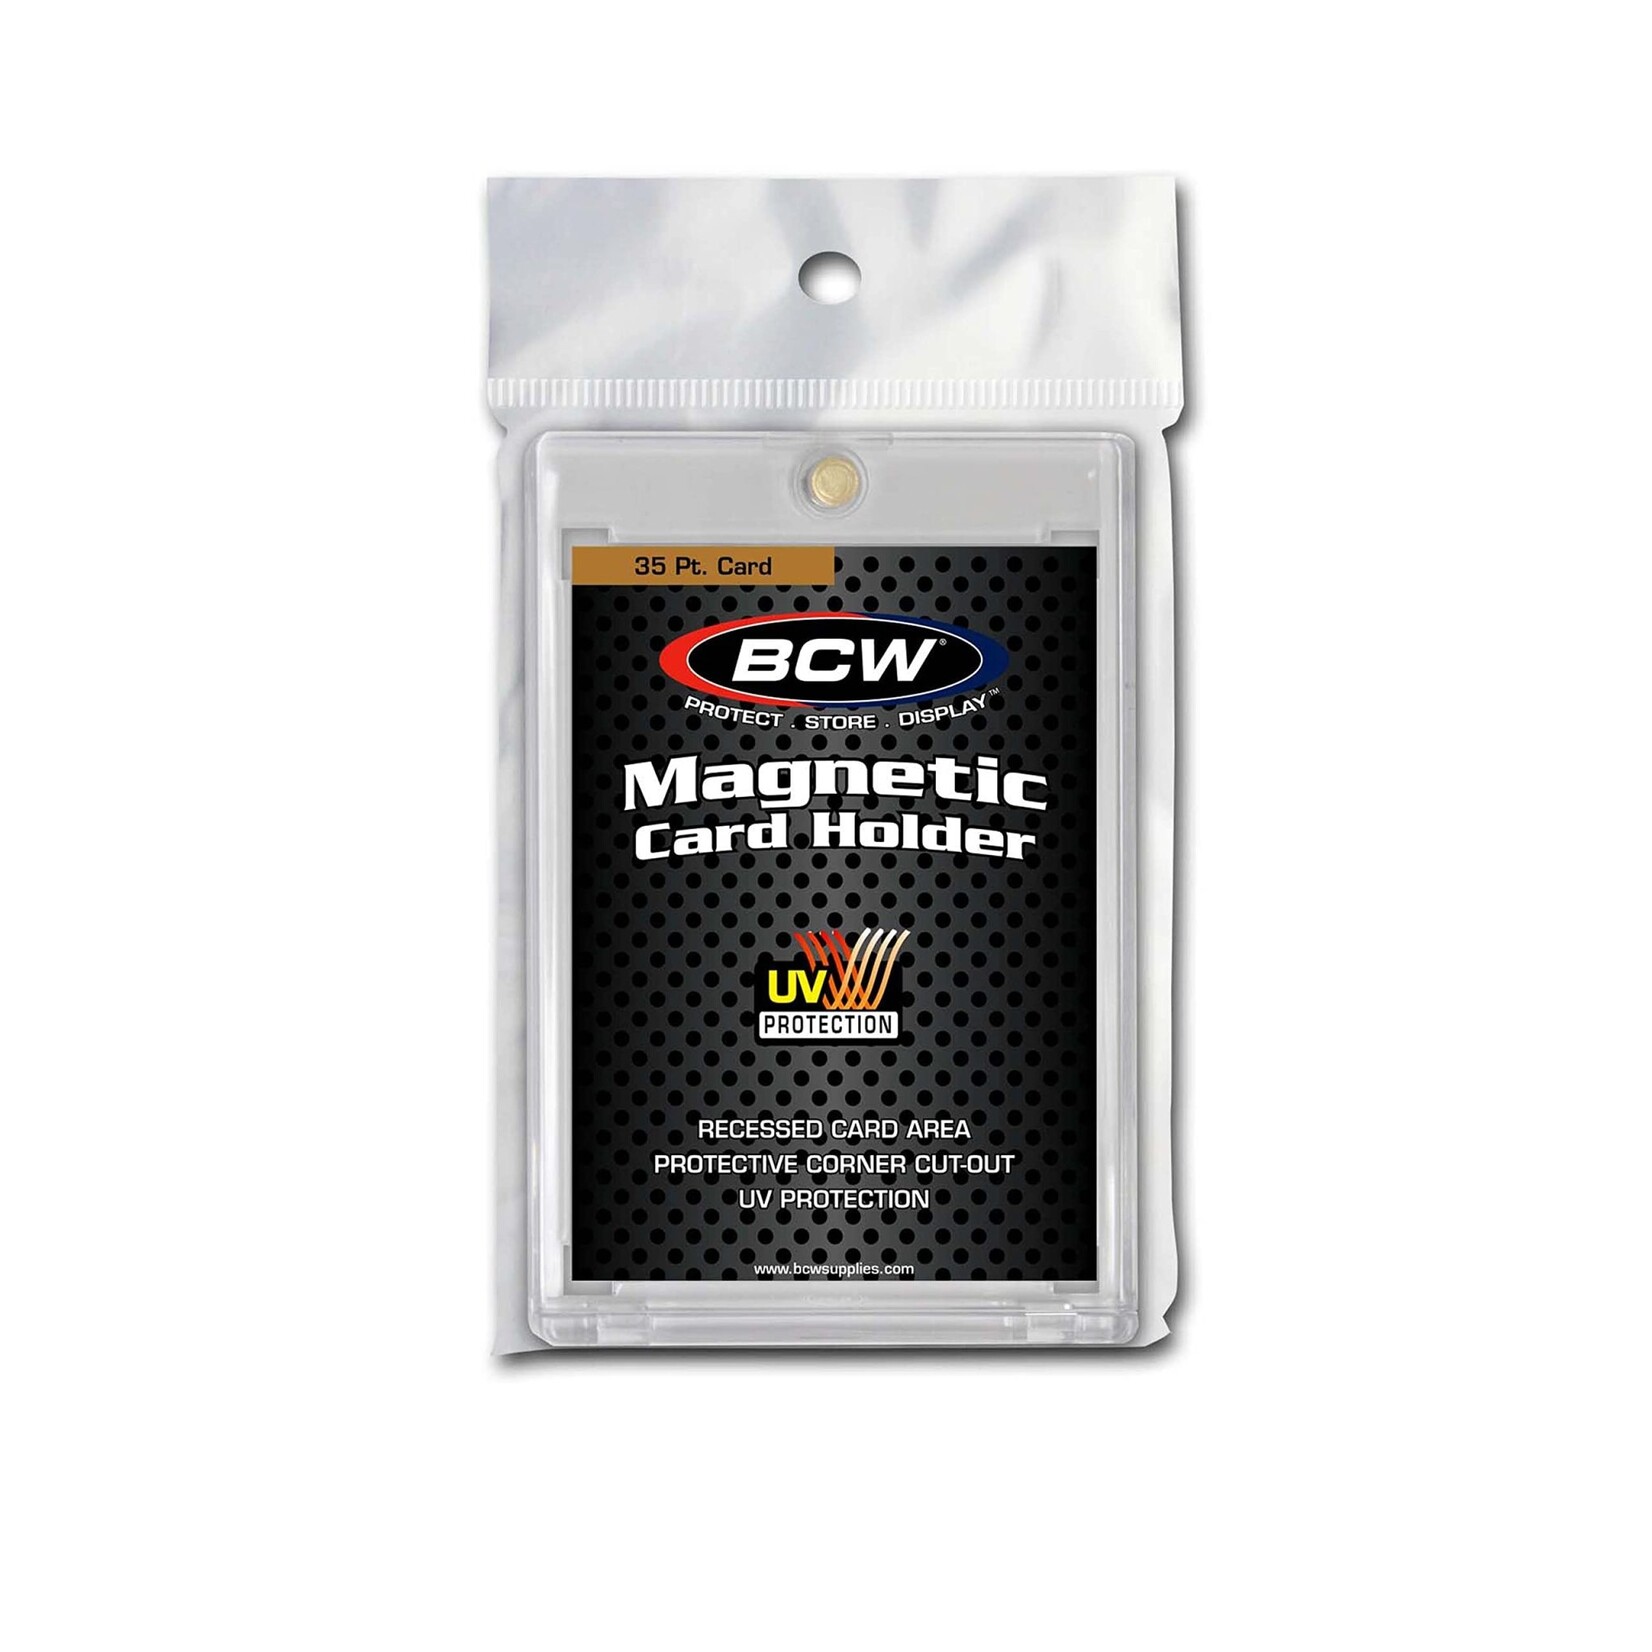 BCW Magnetic Card holder - 35 Pt.